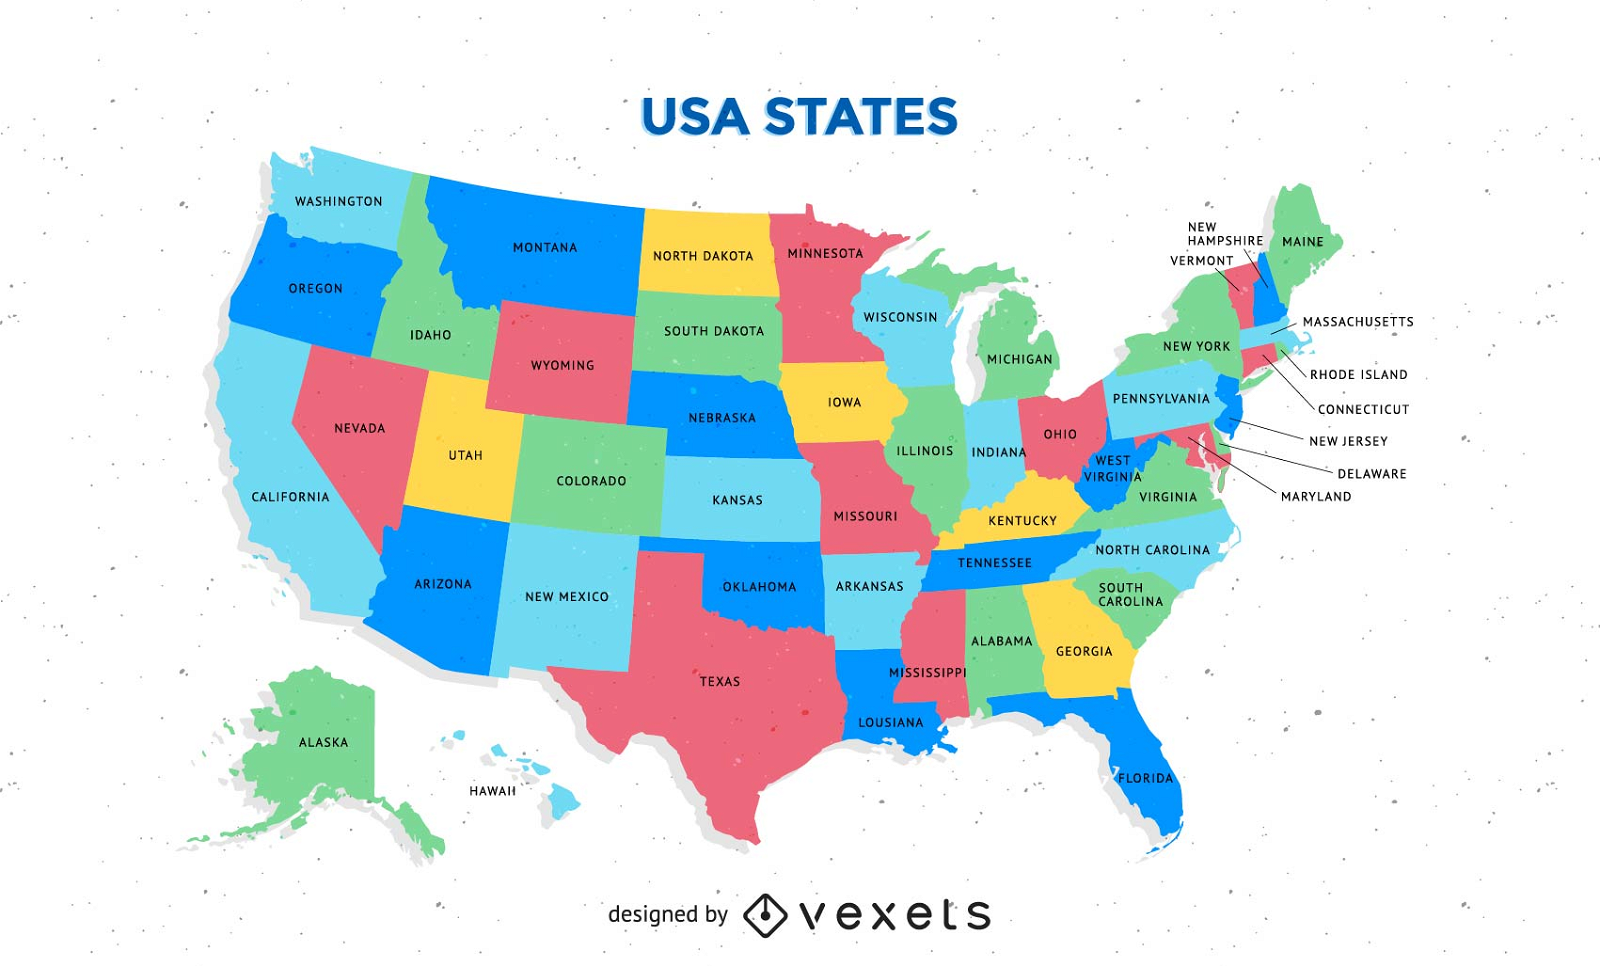 Elegant Imagenes Del Mapa De Los Estados Unidos - pixaby